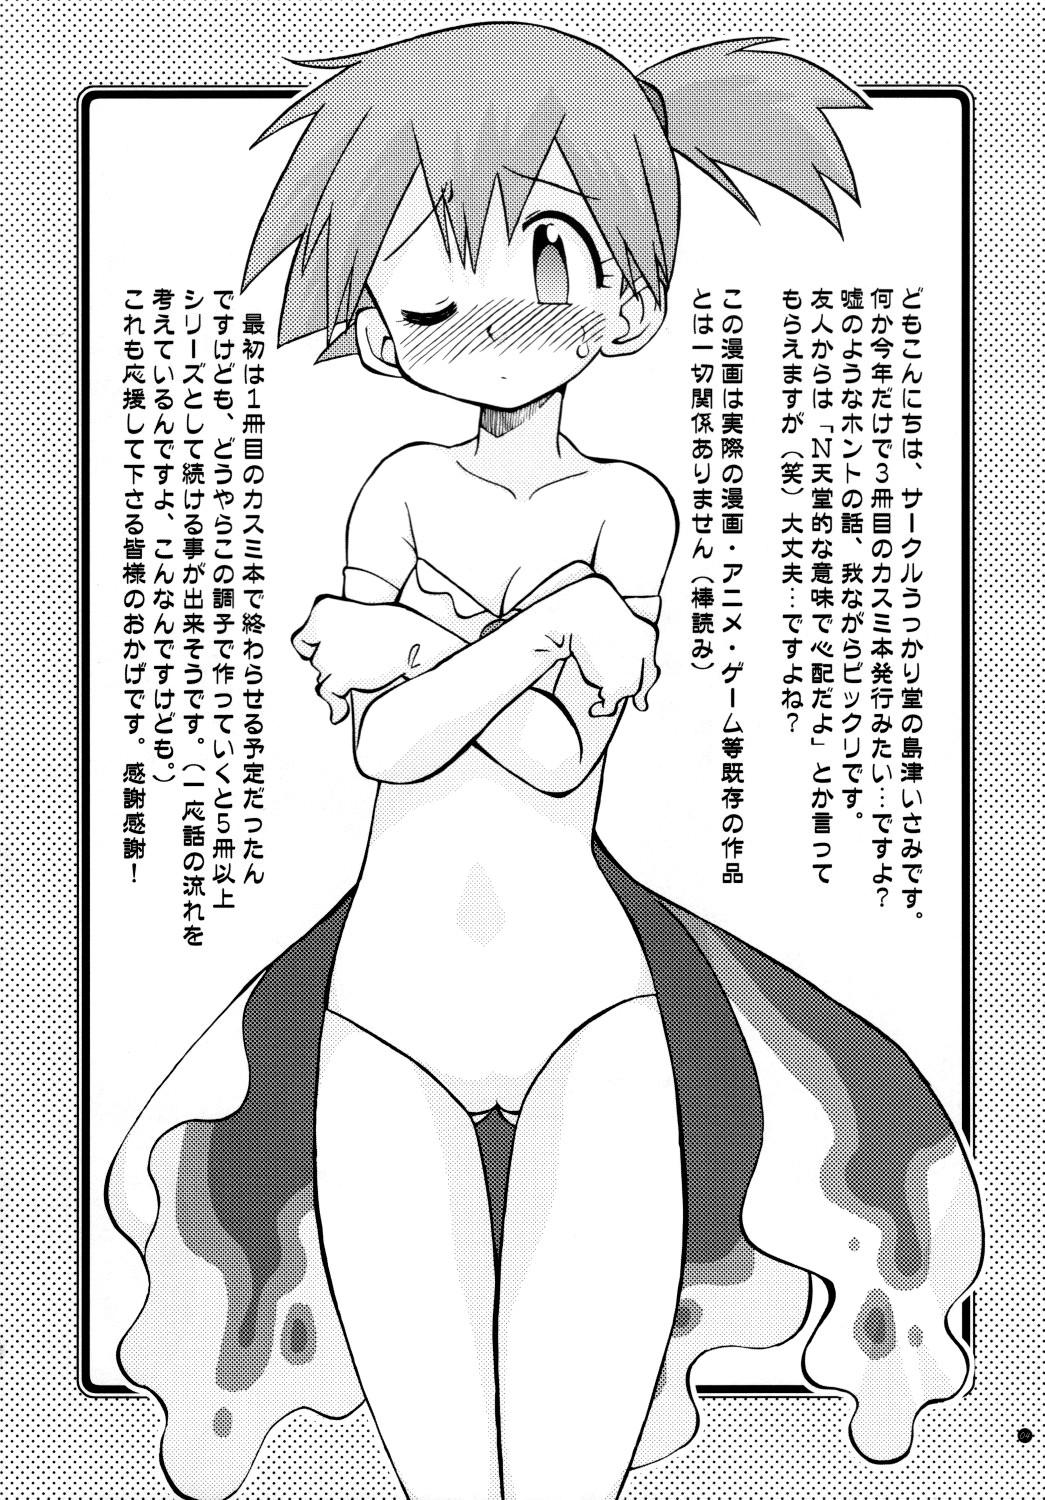 Amateur Free Porn Mada Mada Dashiranai Koto no Takarabako - Pokemon Porno 18 - Page 4